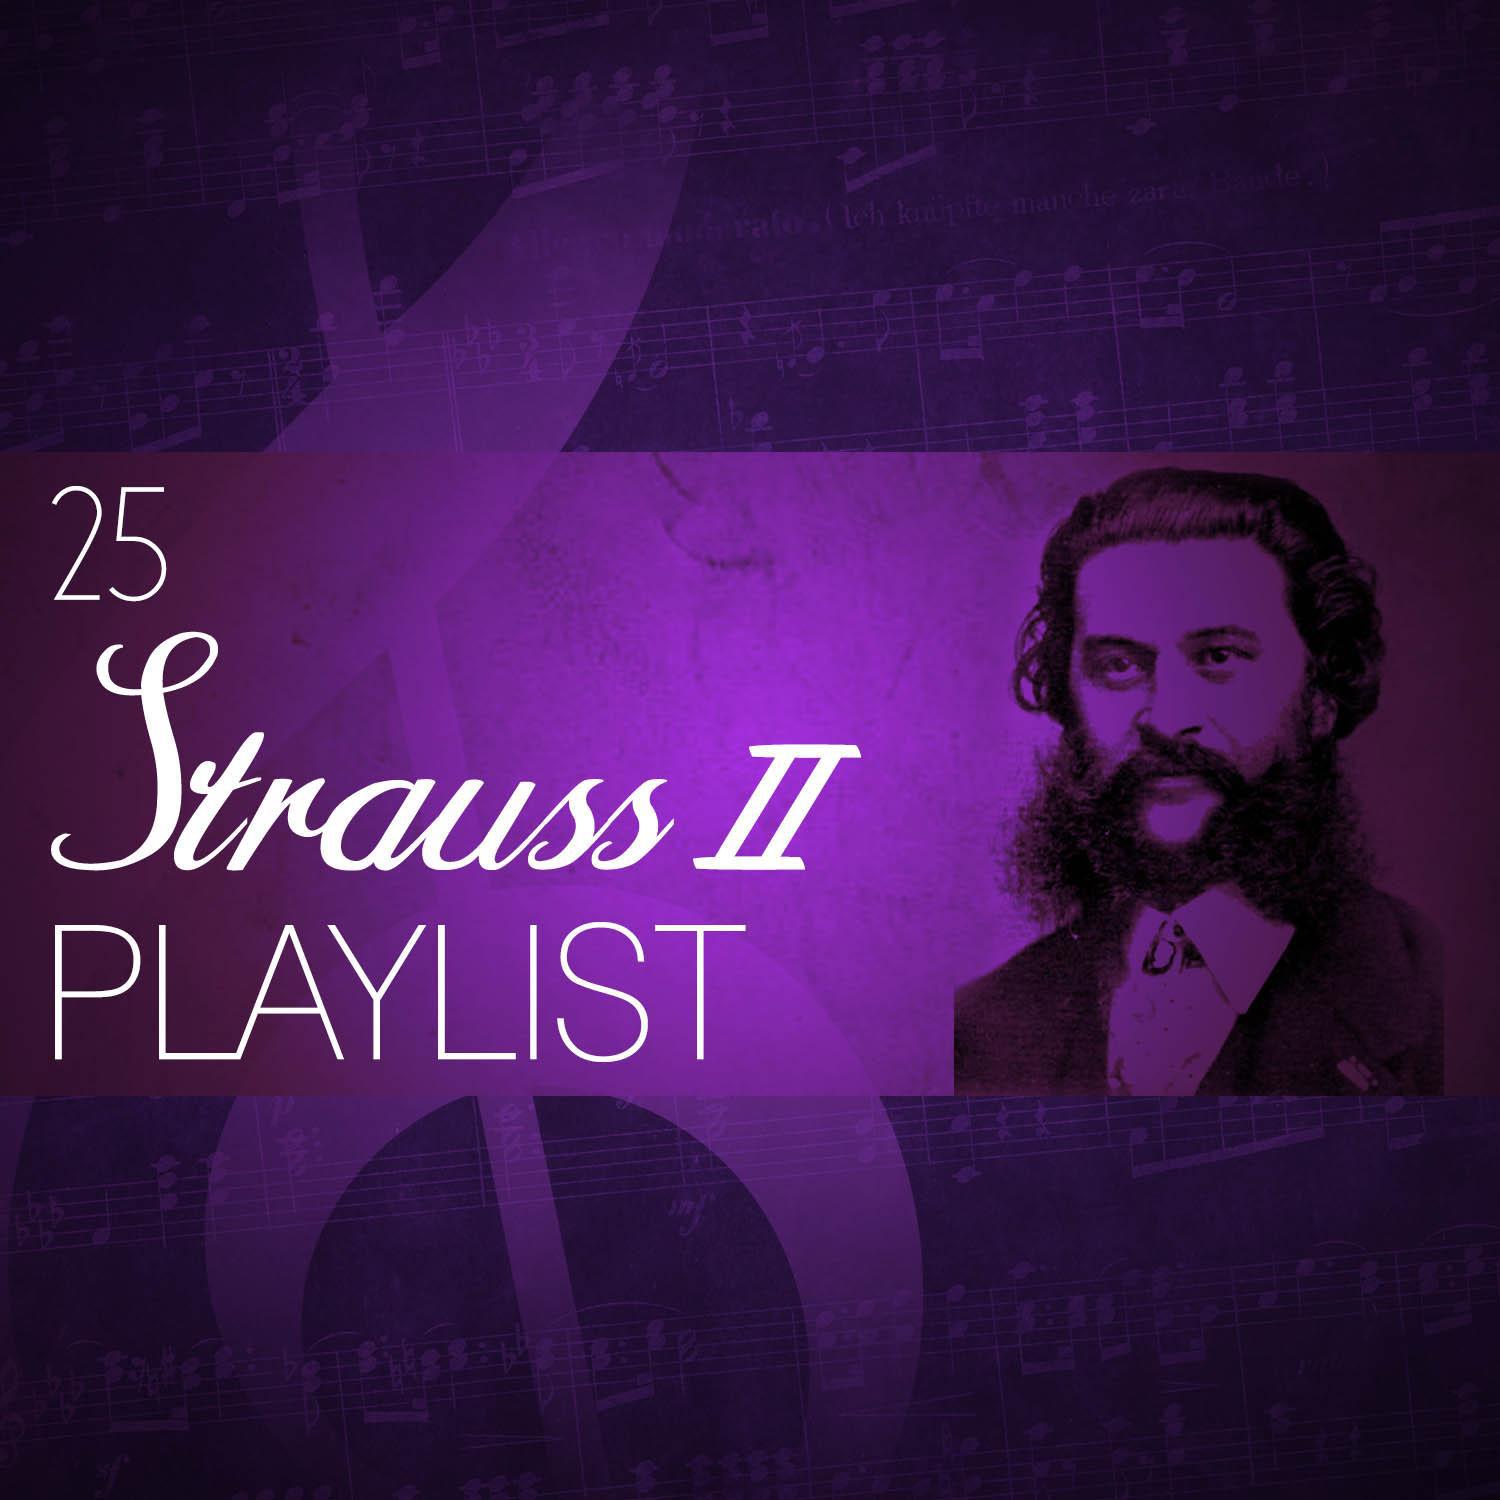 25 Strauss II Playlist